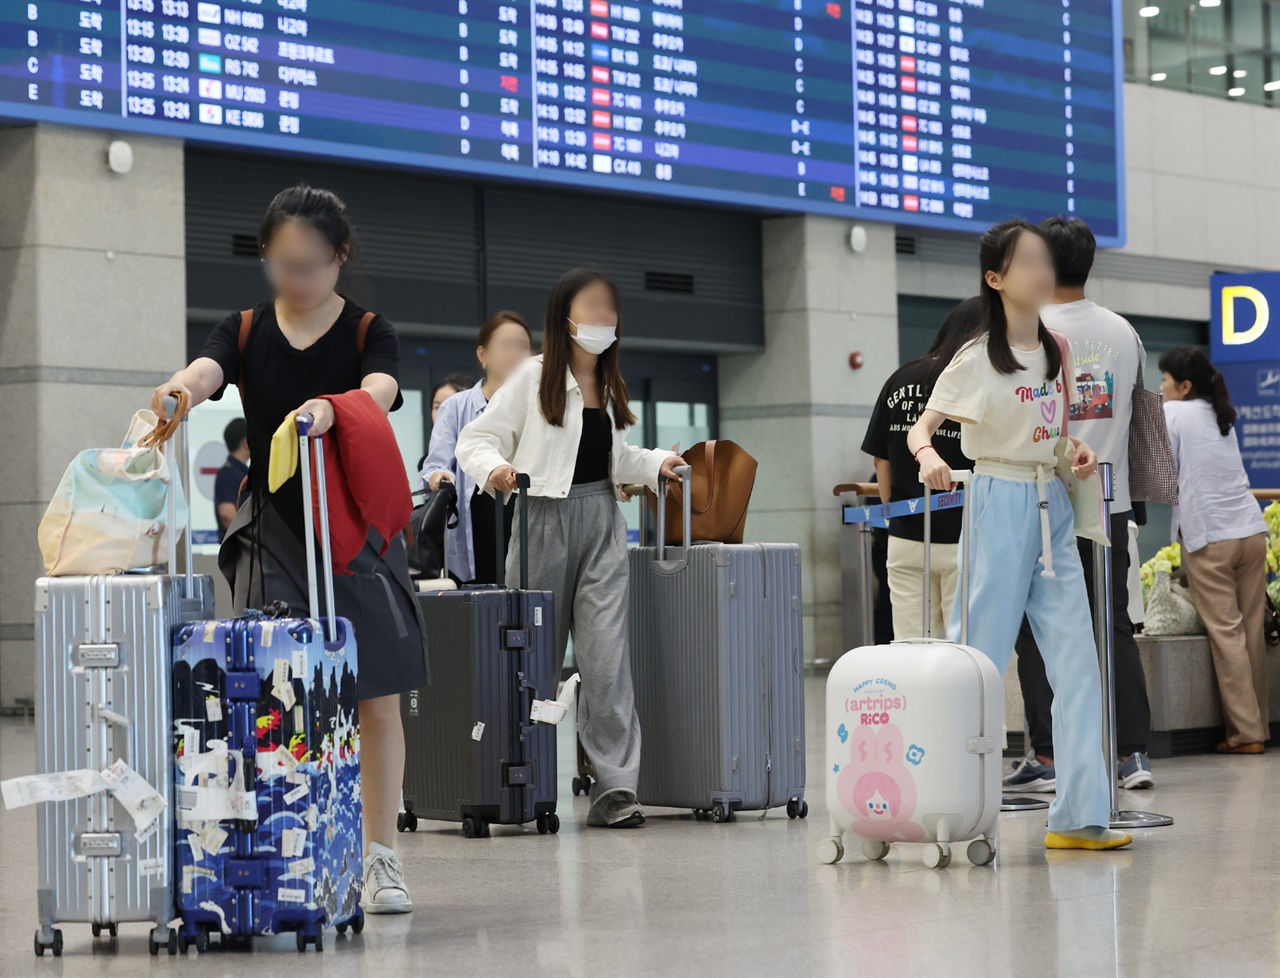 중국인 관광객의 한국행 단체관광이 허용된 가운데 13일 오후 인천국제공항에서 중국발 항공기 등의 이용객이 입국장을 나오고 있다

